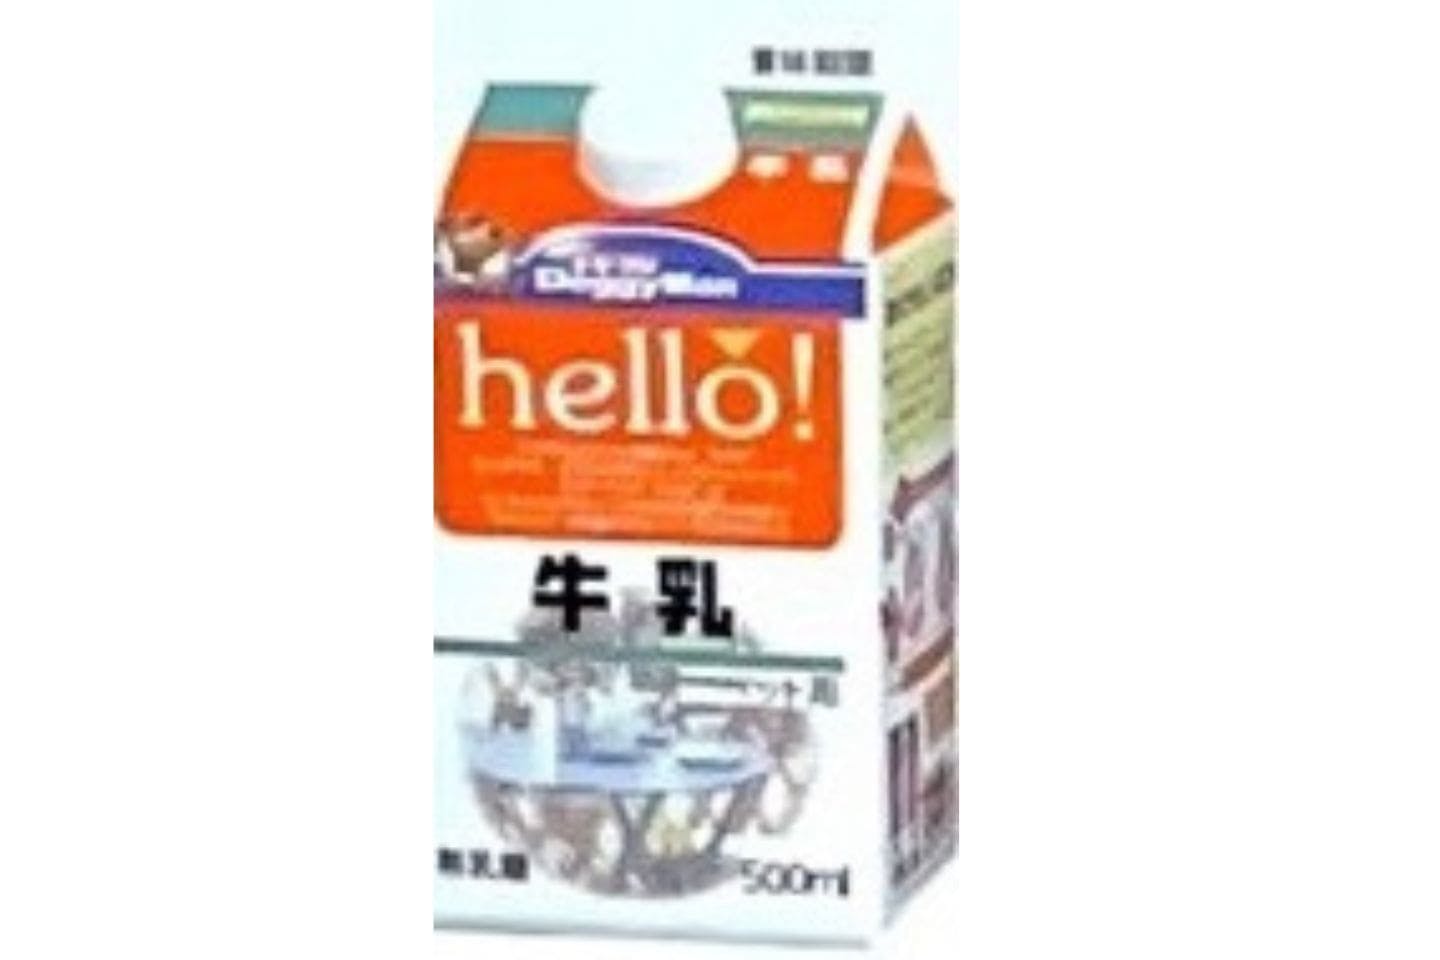 ドギーマンハヤシ初のペット専用牛乳である『hello!牛乳』